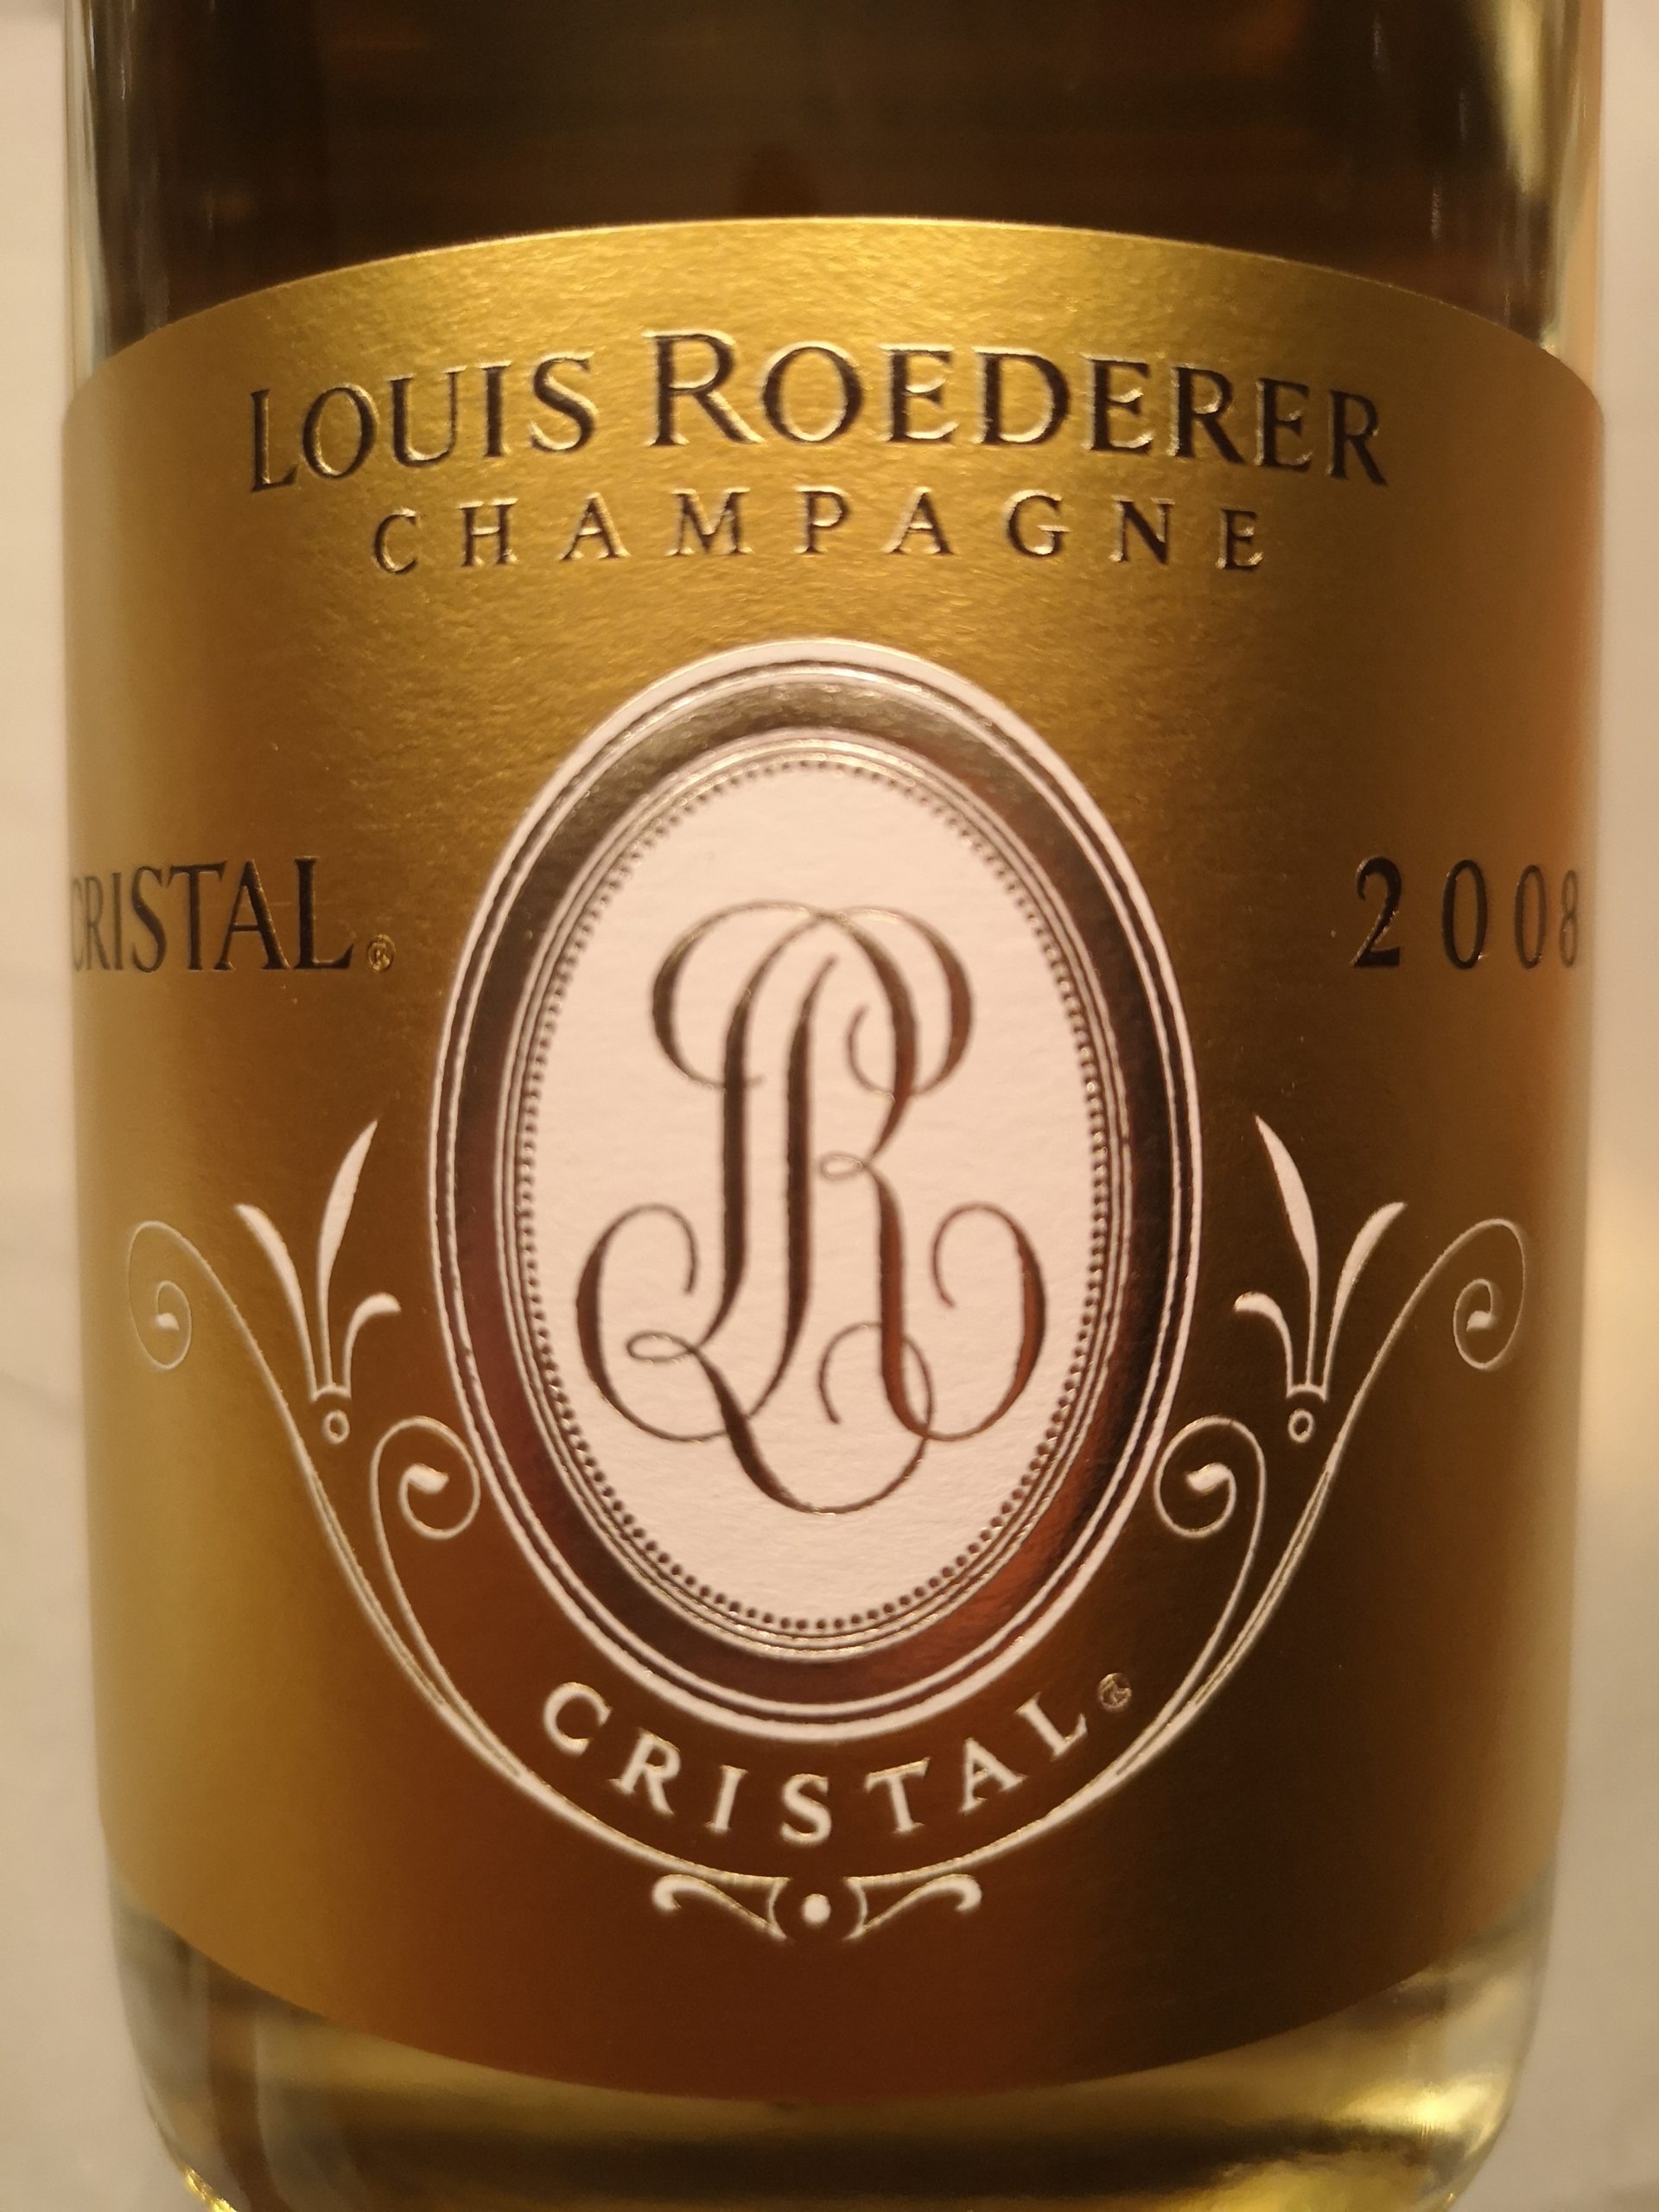 2008 Champagne Cristal | Roederer